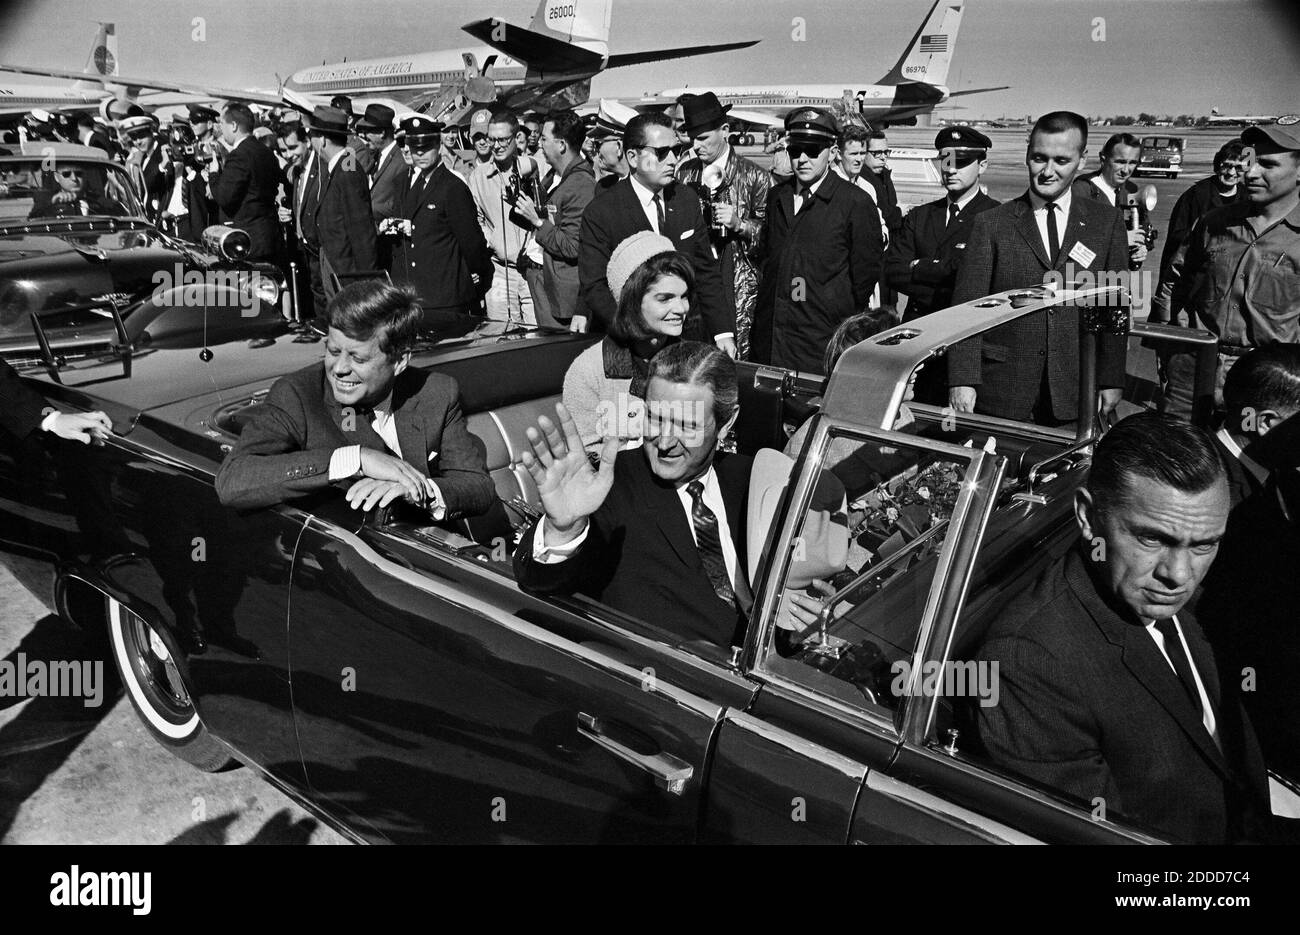 KEIN FILM, KEIN VIDEO, KEIN Fernsehen, KEIN DOKUMENTARFILM - EINE 10-Meilen-Fahrt durch Dallas und eine Rede über nationale Sicherheit im Handelsmarkt erwartete Präsident John F. Kennedy, wie er, First Lady Jacqueline Kennedy, Texas Gov. John Connally und Nellie Connally, verlassen Love Field am 22. November 1963. Weniger als eine Stunde später würden Schüsse die Pläne des Präsidenten erschüttern und die Nation in tiefe Trauer stürzen. Machen Sie eine Reise zurück zu diesem verhängnisvollen Tag, vor 50 Jahren. Foto von Tom Dillard/Dallas Morning News/MCT/ABACAPRESS.COM Stockfoto